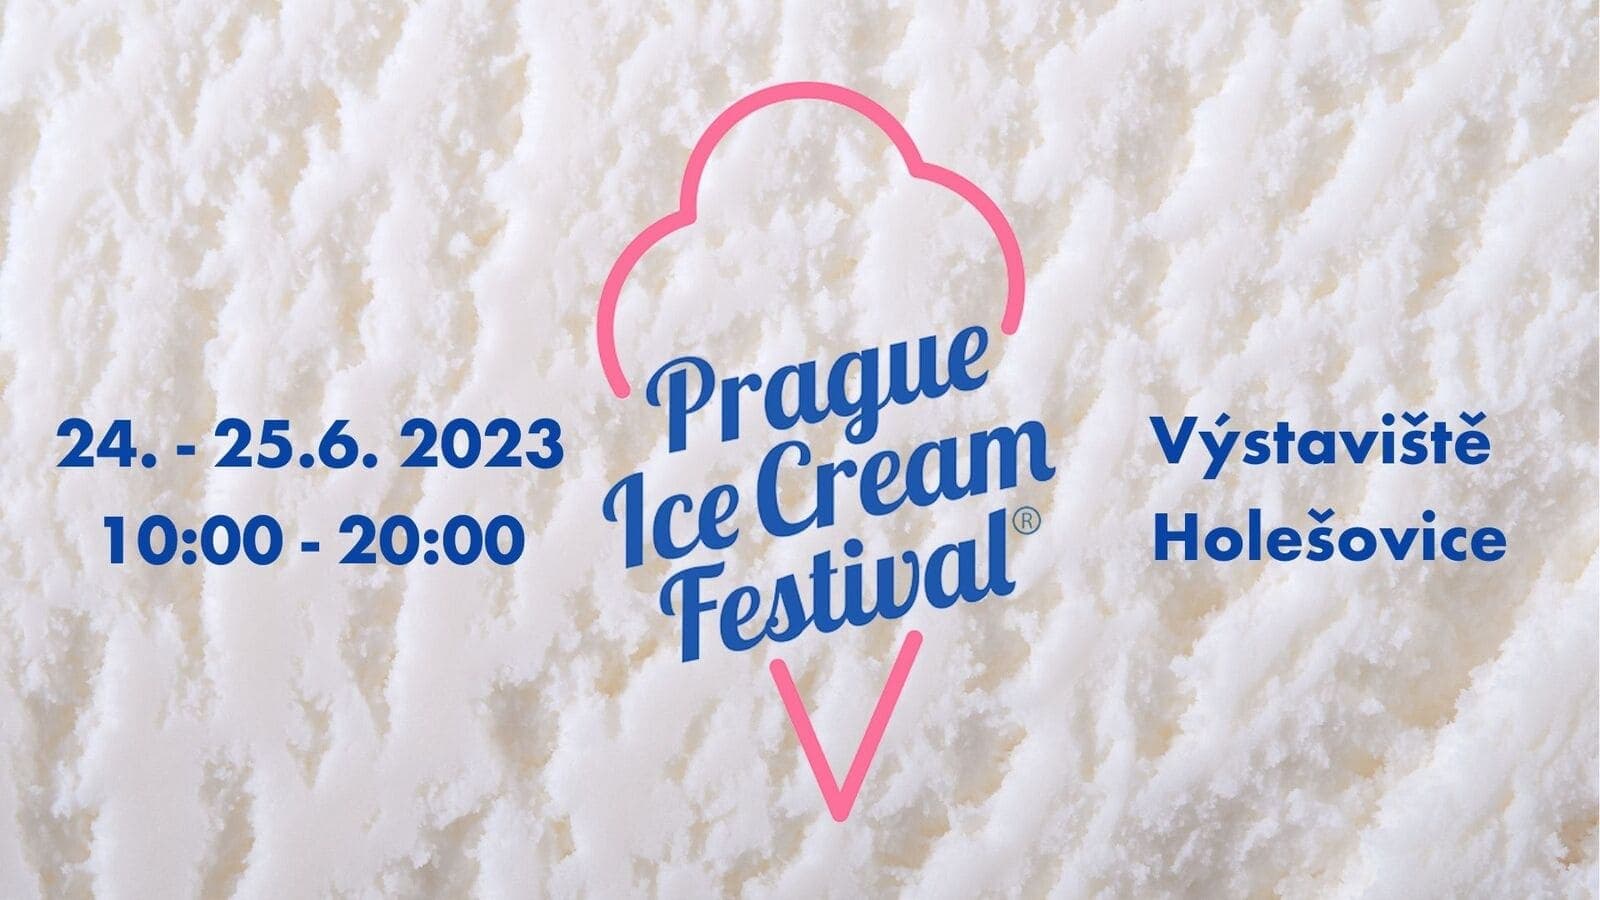 24 и 25 июня в Праге состоится фестиваль мороженого Prague Ice Cream Festival 2023